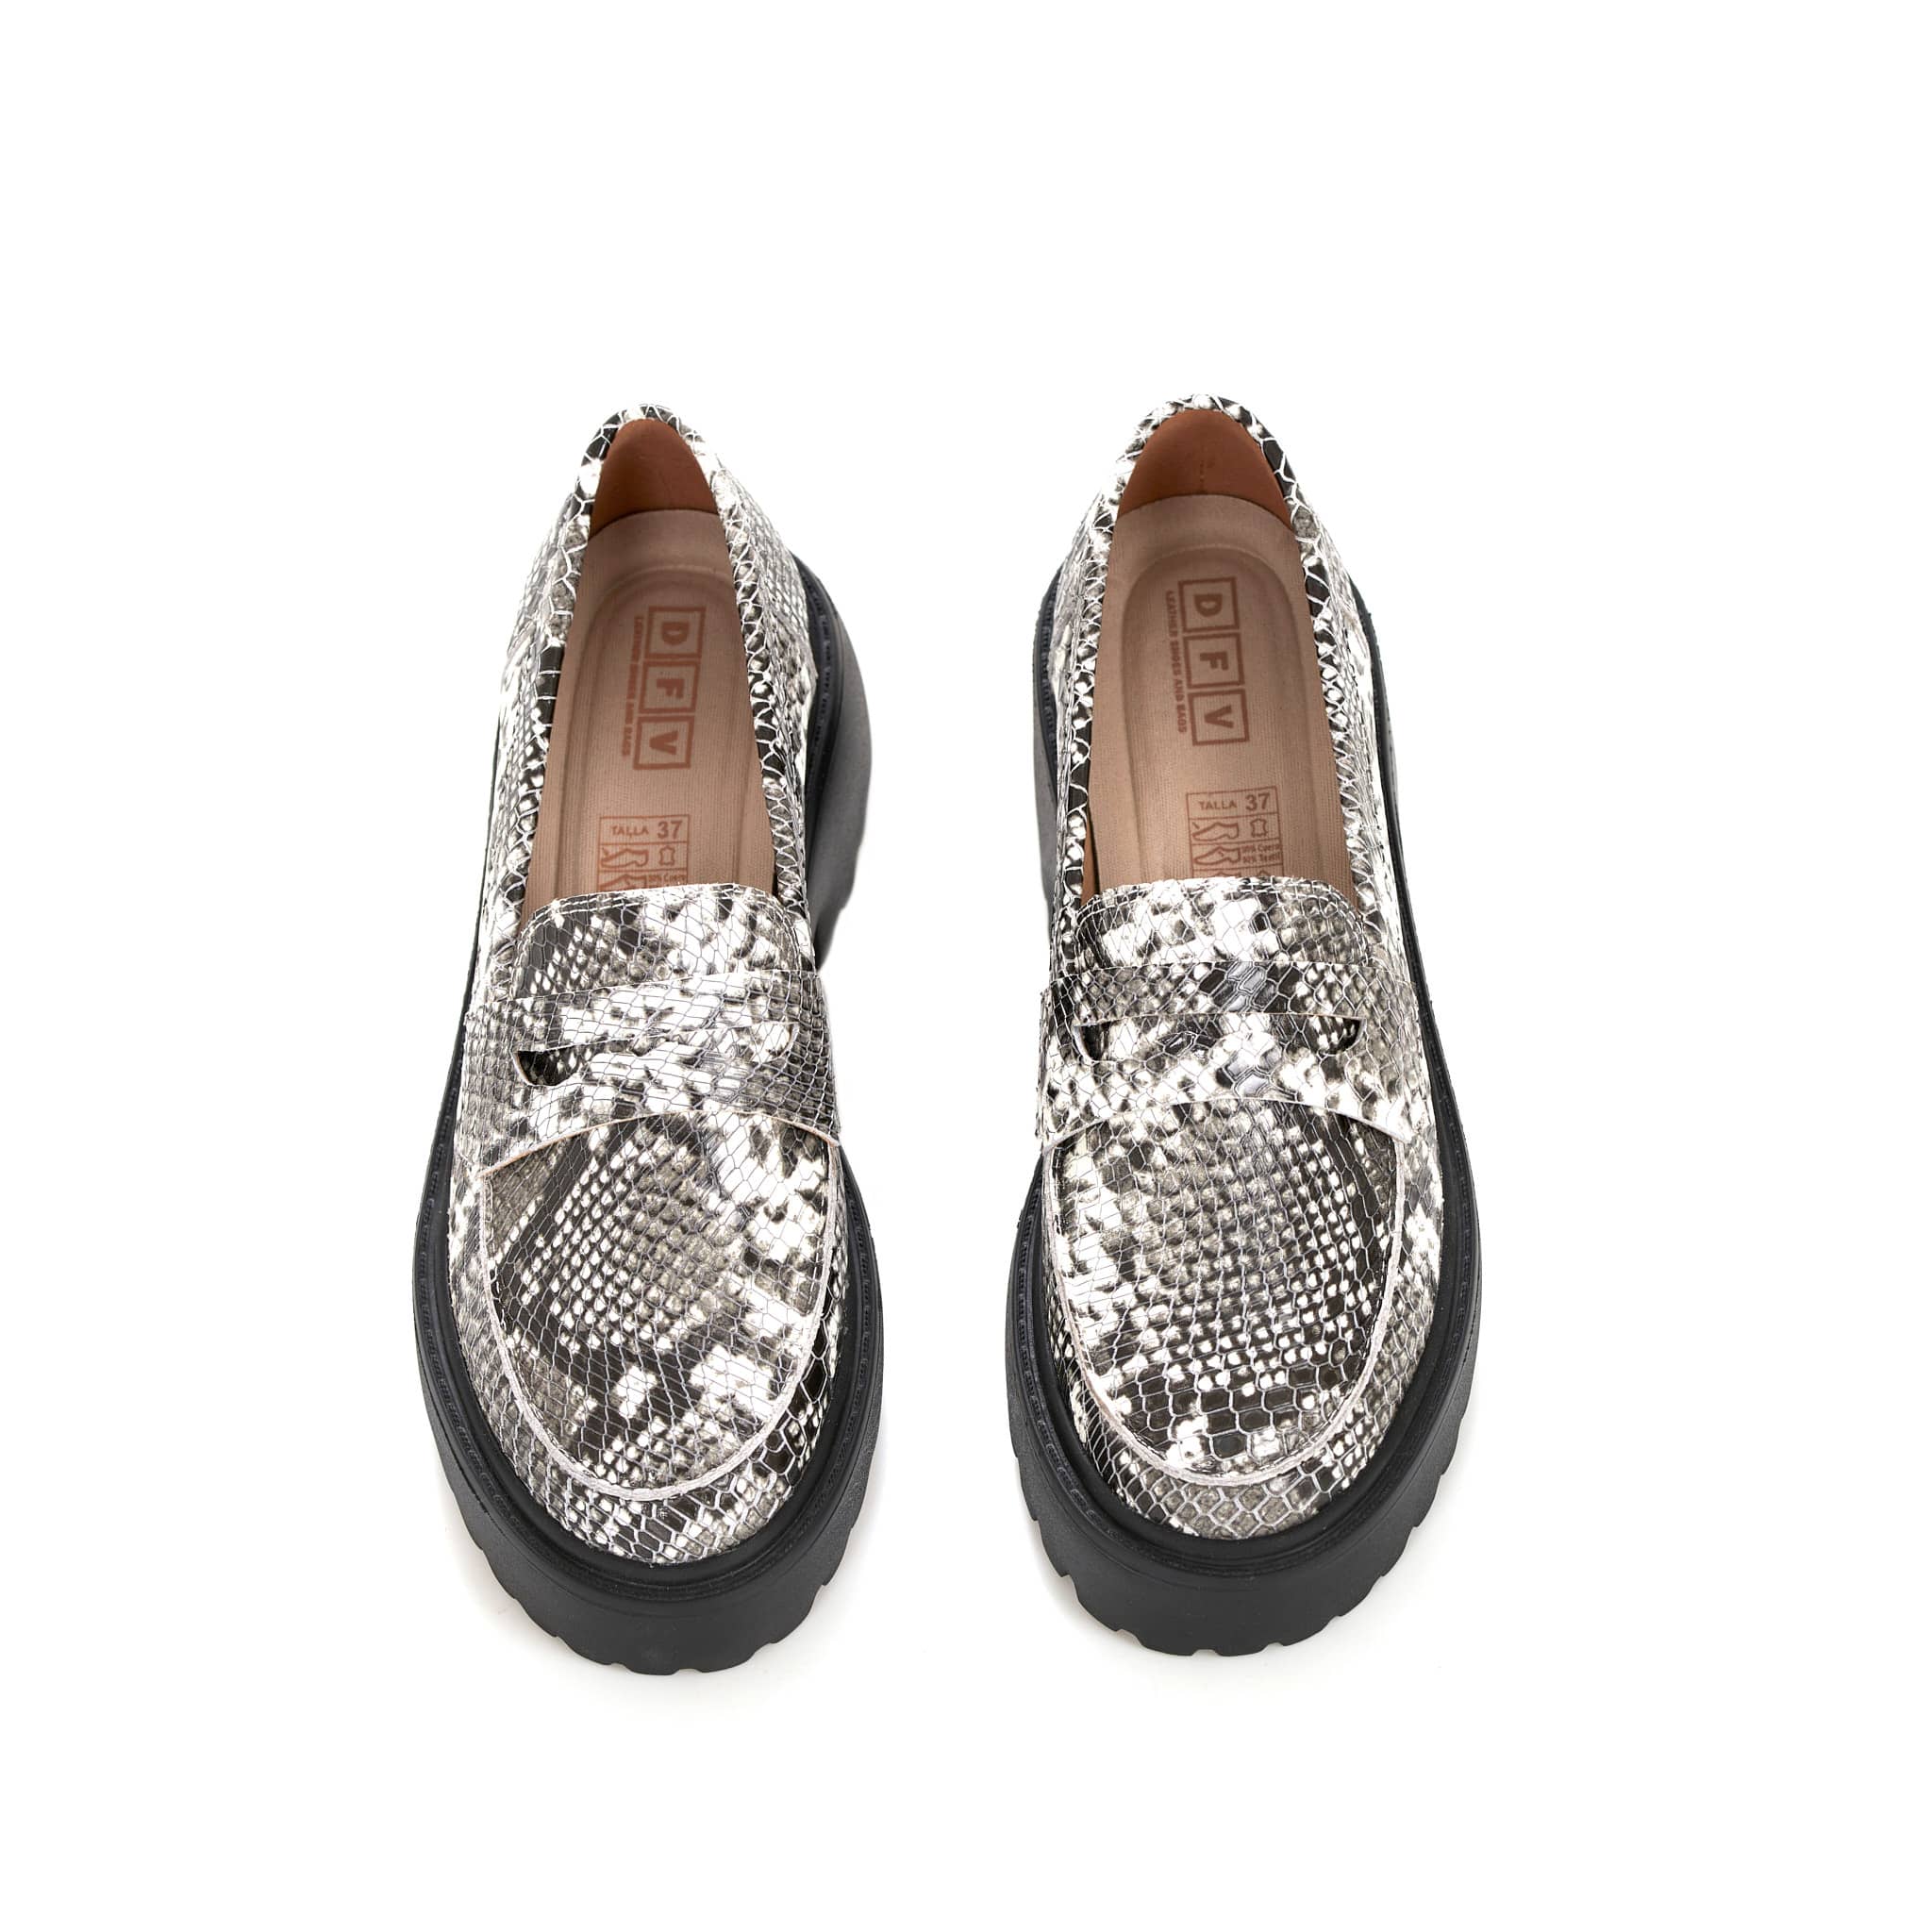 Zapatos Tipo Loafer Para Mujer Con Plataforma - Ref. Z-2764N - DFV